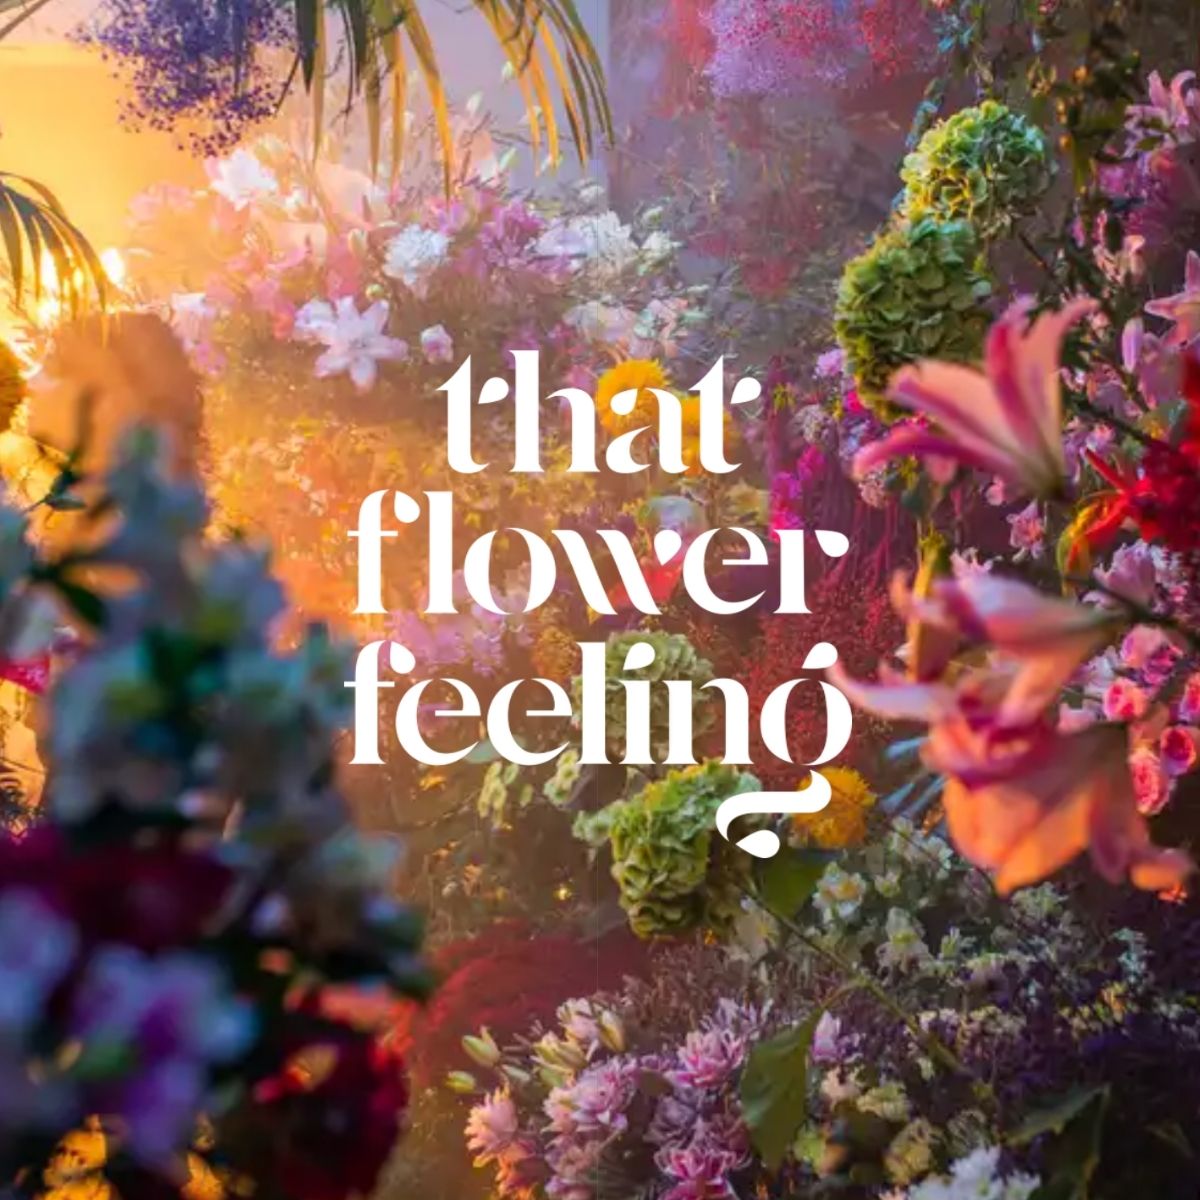 That flower feeling